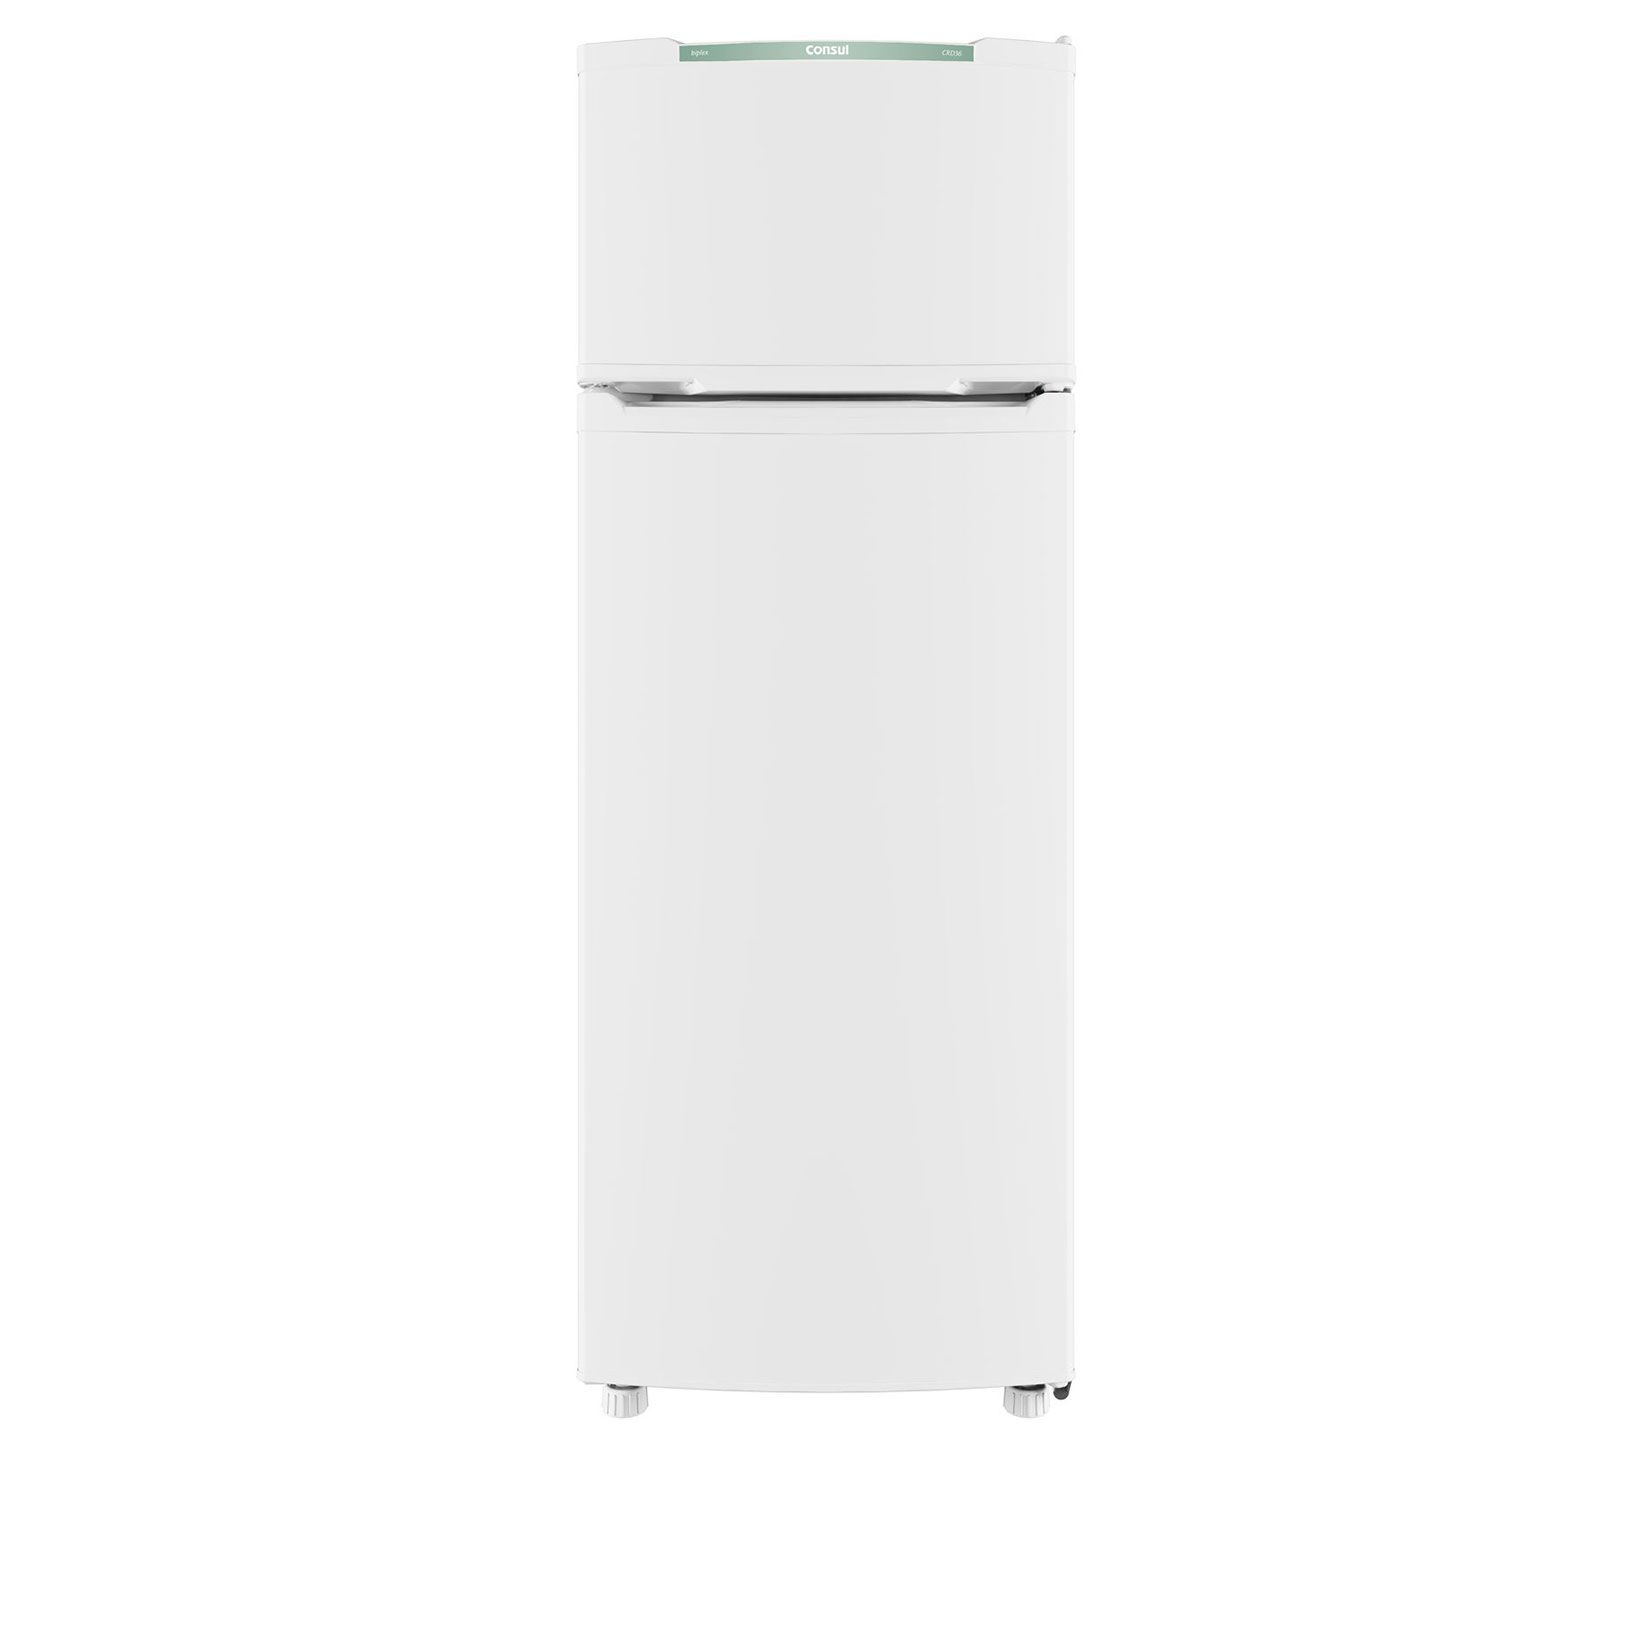 Menor preço em Refrigerador Consul Cycle Defrost Duplex 334 Litros Branco CRD37EBANA– 127 Volts